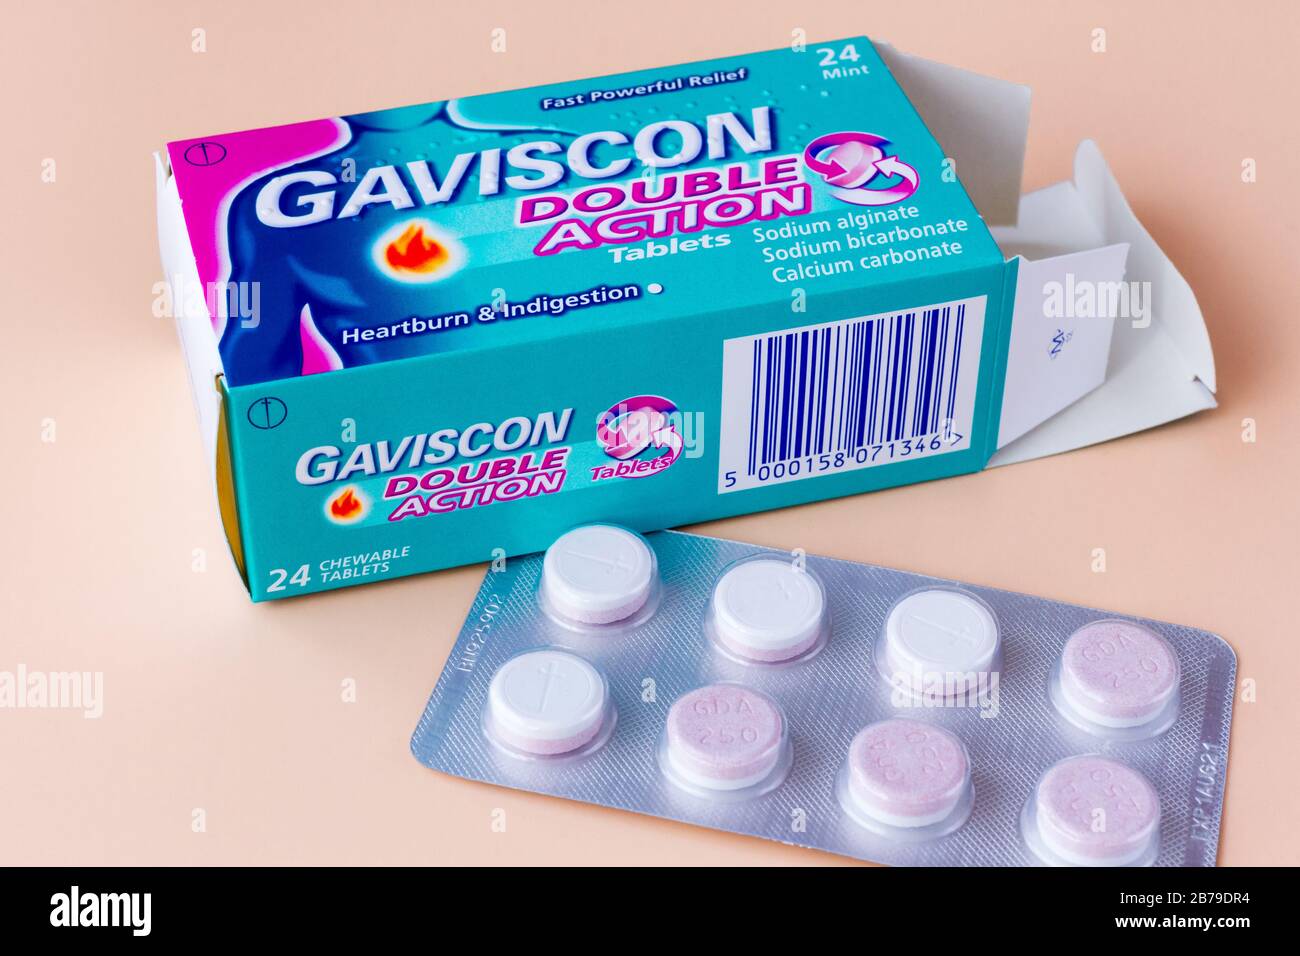 Gaviscon tablets immagini e fotografie stock ad alta risoluzione - Alamy